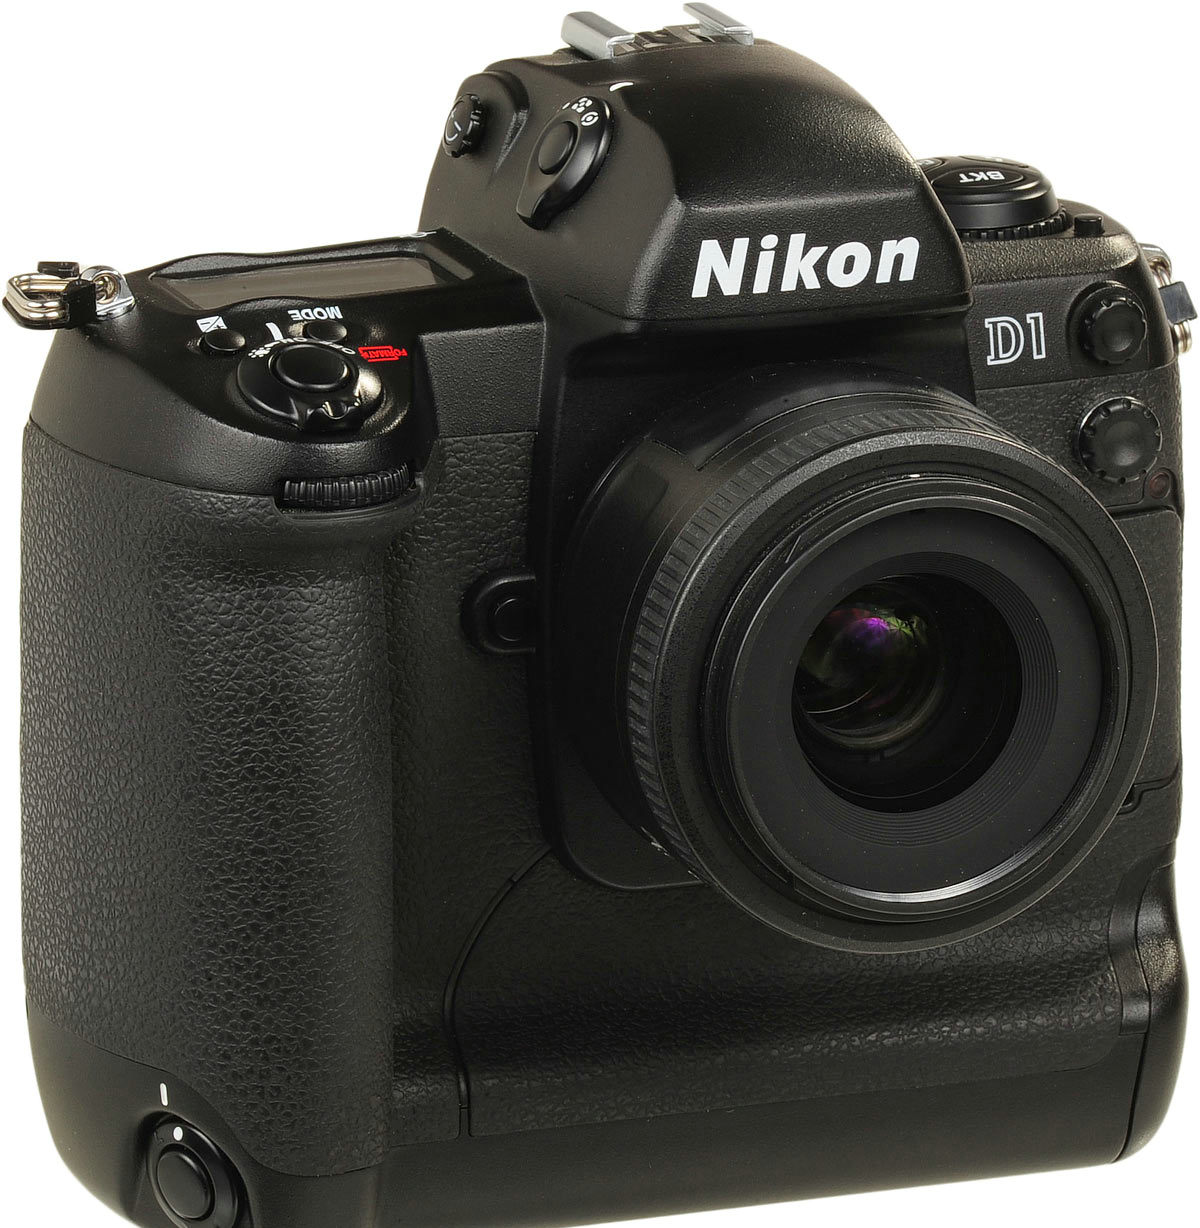 Nikon D1，1999年。凭借仅为150美刀的售价，该款相机让市场感受到了物美价廉的诚意，拥有270万像素的图像传感器， 4.5张每秒的连拍速度，以及对Nikon系列镜头的对接支持，该款数码单镜反光相机“凌霸”一时。